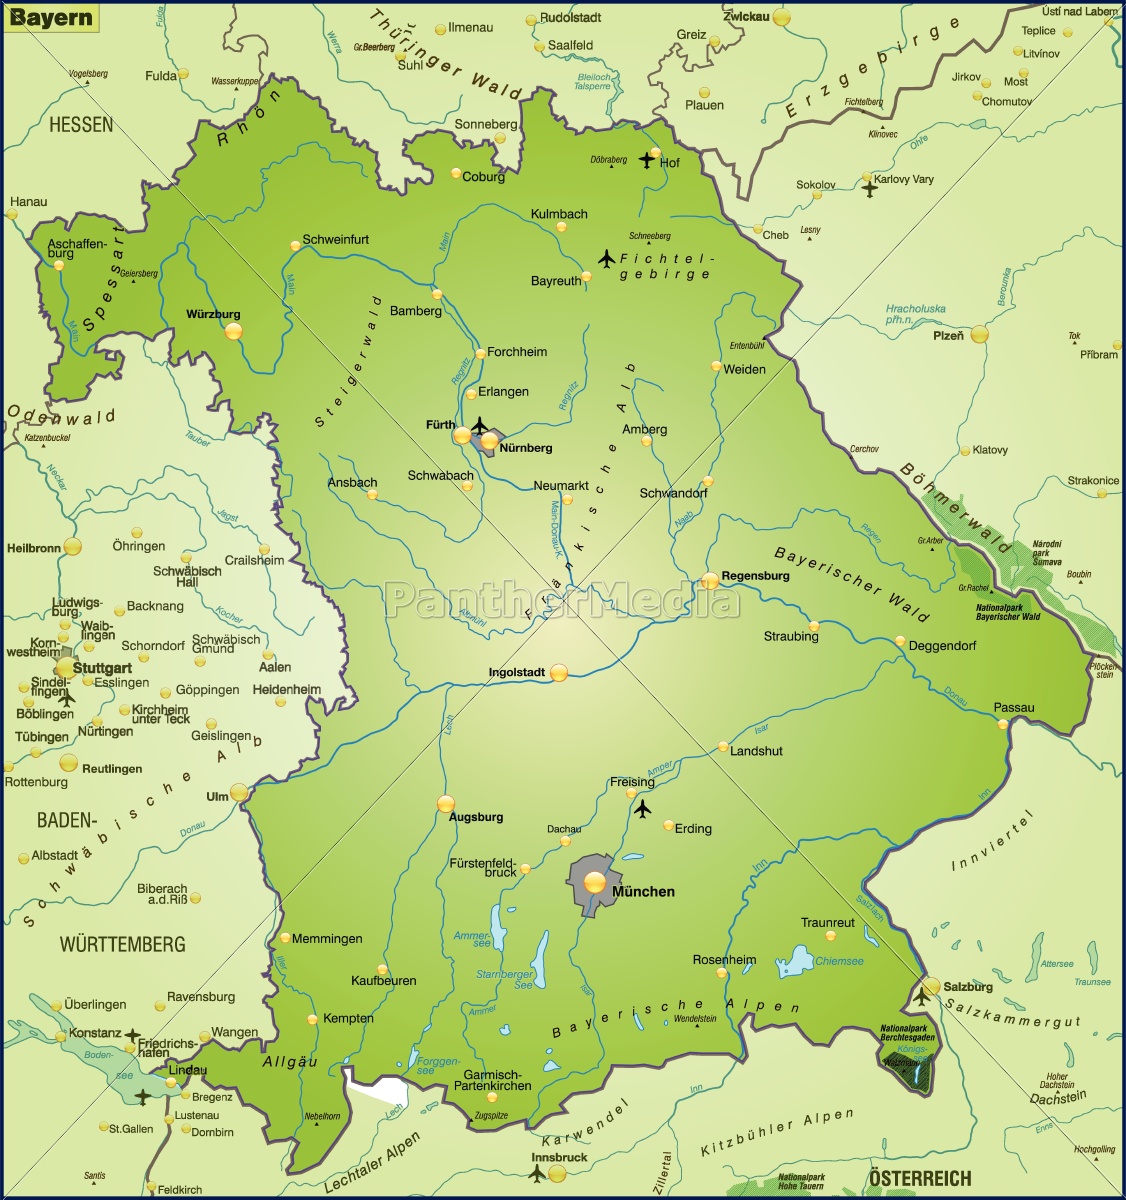 Karte Von Bayern Als Ubersichtskarte In Grun Lizenzfreies Bild 10655375 Bildagentur Panthermedia